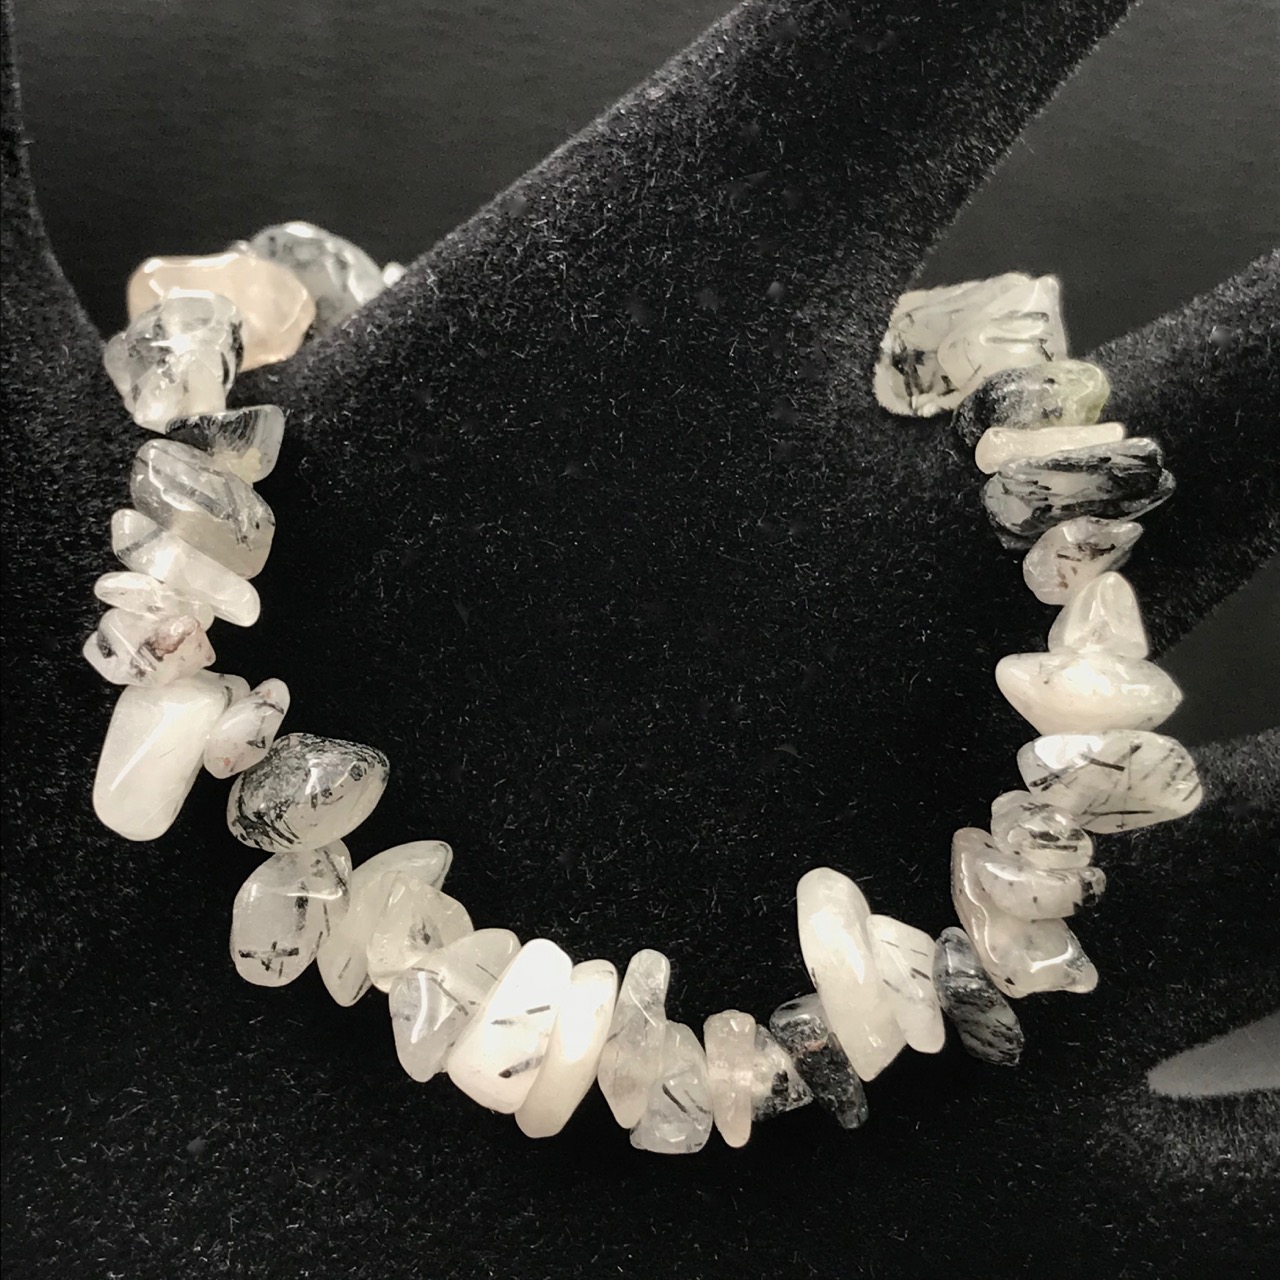 Bracelet chips en cristal de roche avec inclusions de tourmaline